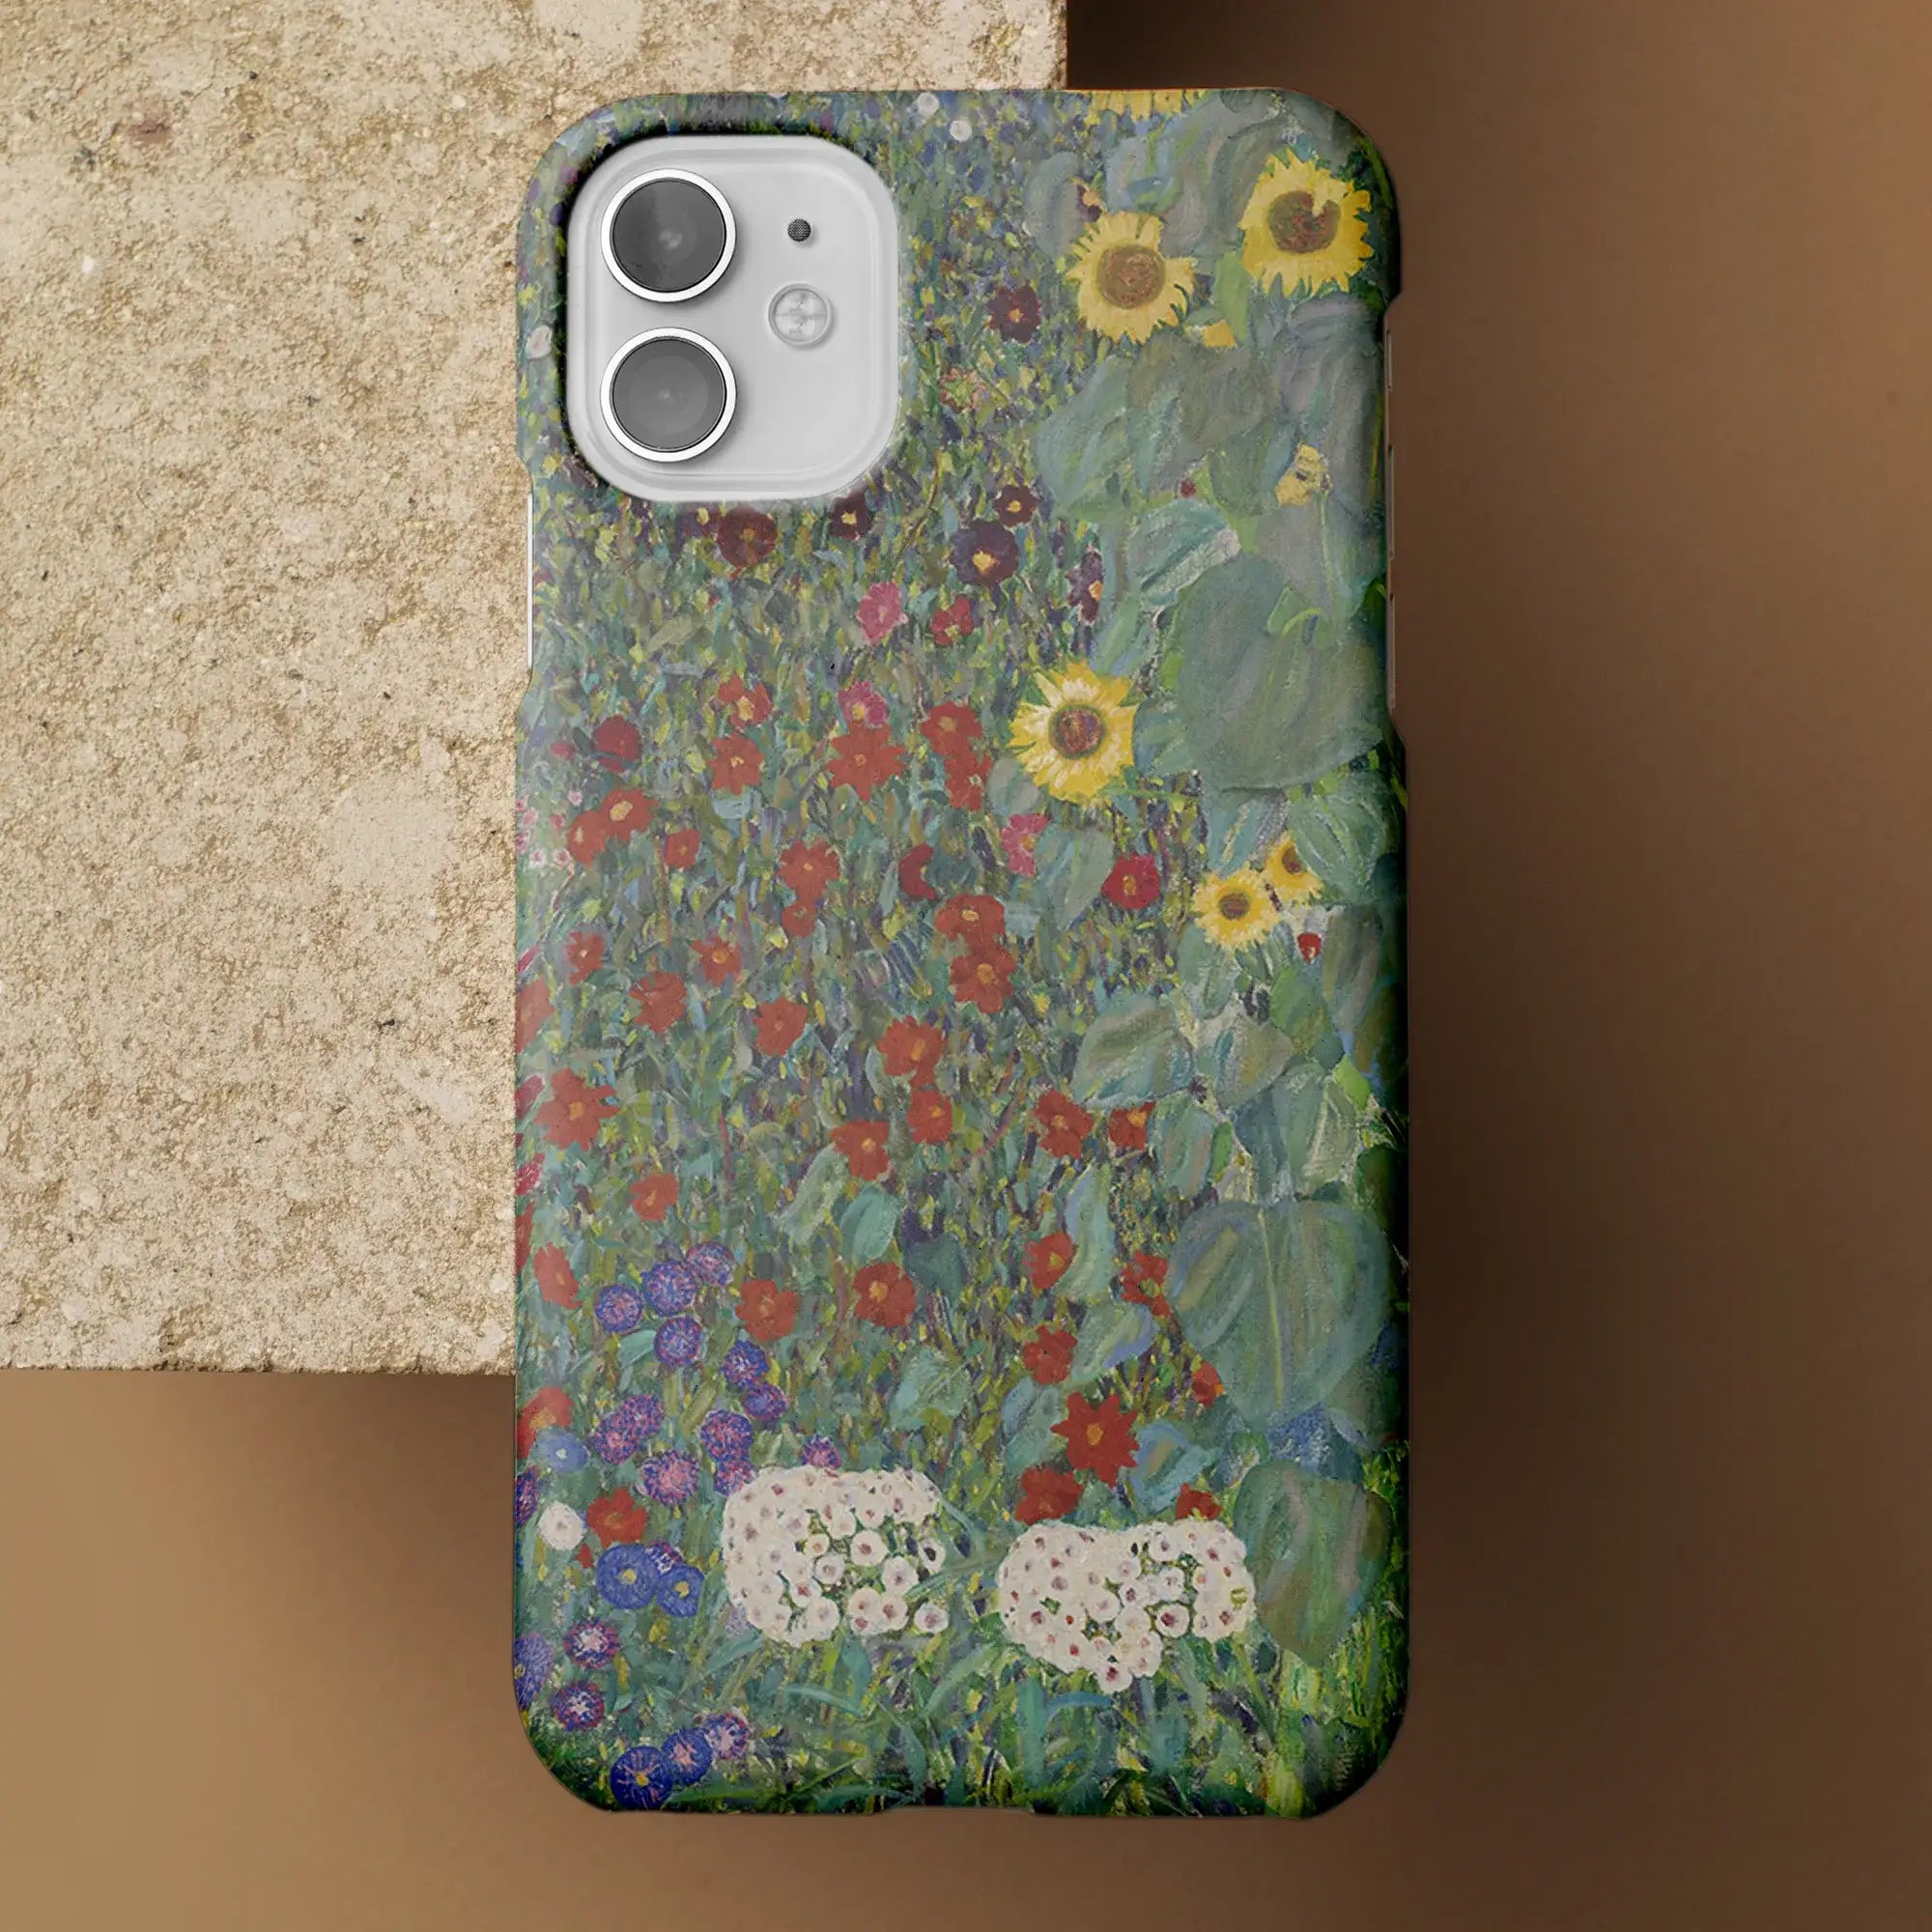 Farm Garden With Sunflowers - Gustav Klimt Art Phone Case - Mobile Phone Cases - Aesthetic Art